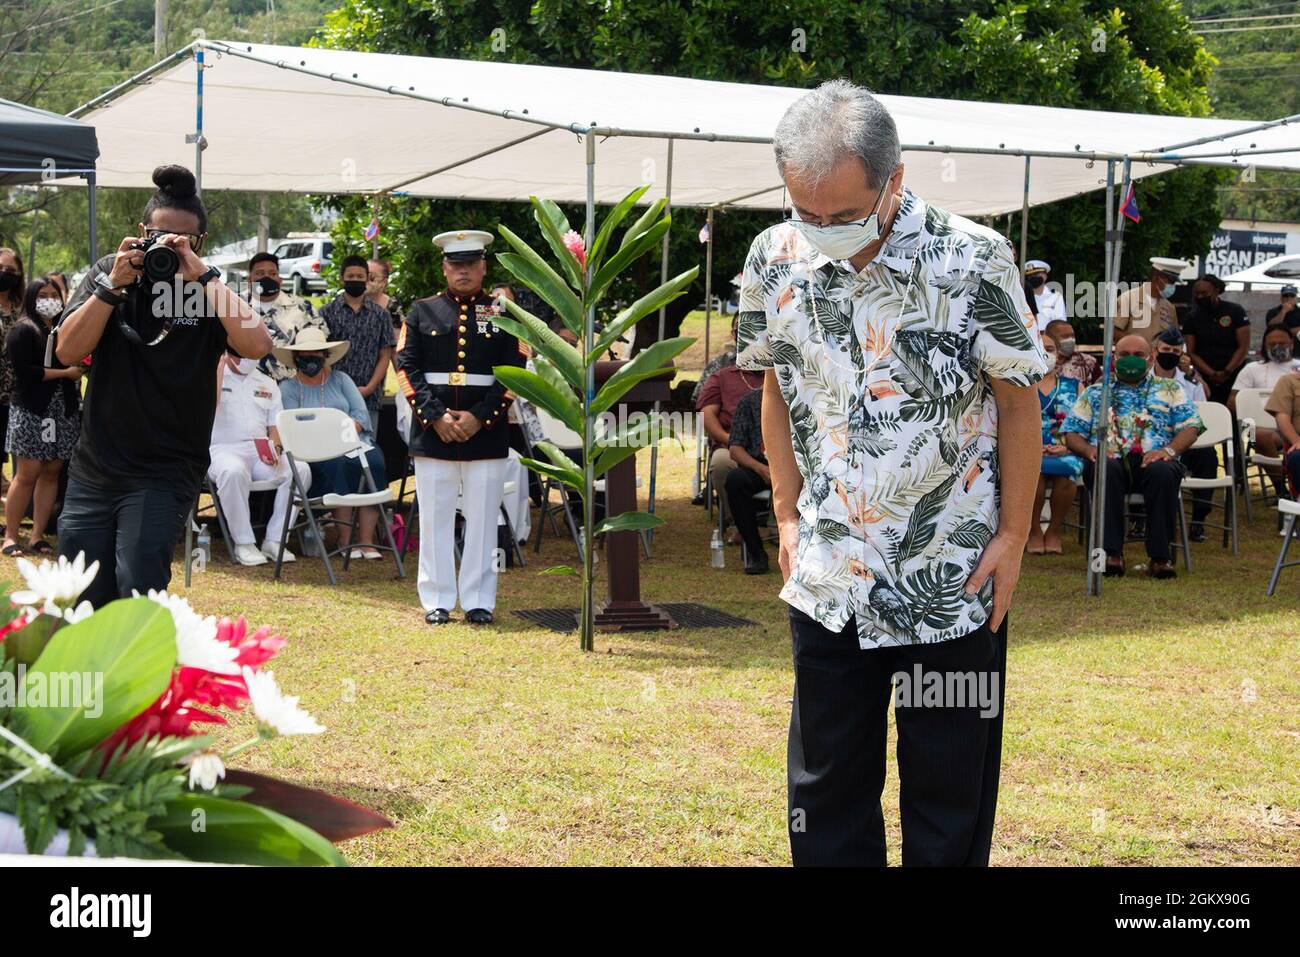 ASAN, Guam (19. Juli 2021) - der japanische Generalkonsul Kobayashi Toshiaki bietet während der Gedenkfeier zur Landung am Strand von Asan am 16. Juli einen Bogen an. Mitglieder des Militärdienstes, lokale Regierungsbeamte und Bewohner versammelten sich, um an die Befreiung Guams durch das US-Militär während des Zweiten Weltkriegs zu erinnern Am Ort der Zeremonie pflanzte die 3. Marine Division die US-Flagge, nachdem sie den Strandkopf gesichert hatte. Etwa 55,000 Marine- und Armeesoldaten nahmen an der Schlacht um Guam Teil. Mehr als 1,800 amerikanische Dienstmitglieder wurden in den ersten 21 Kampftagen im Einsatz getötet oder starben an Wunden. Stockfoto